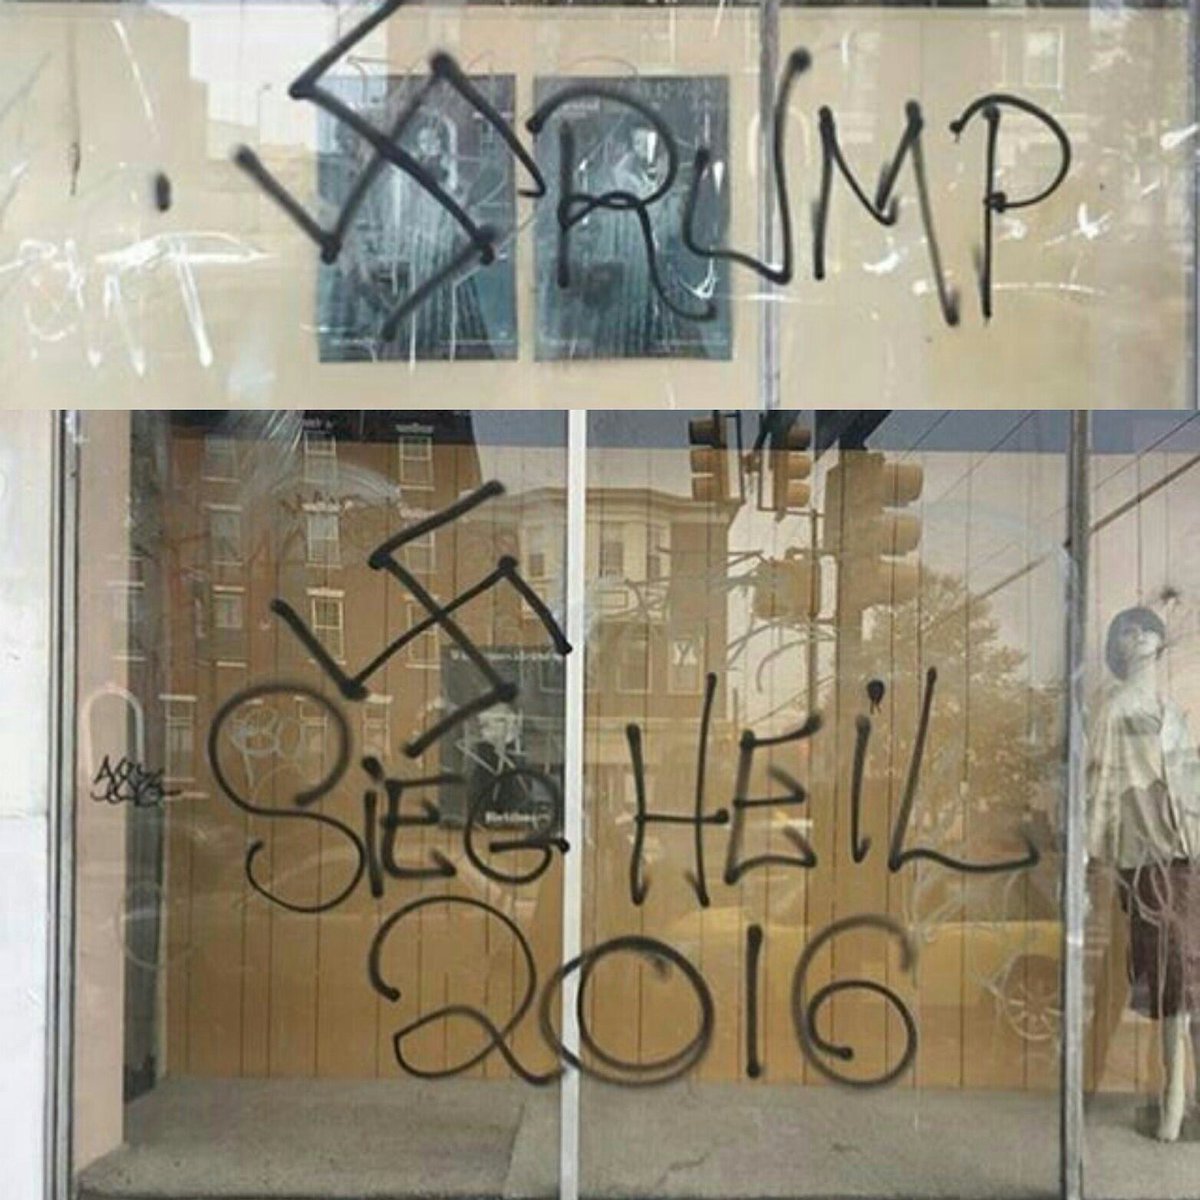 trump-swastika-philadelphia.jpg